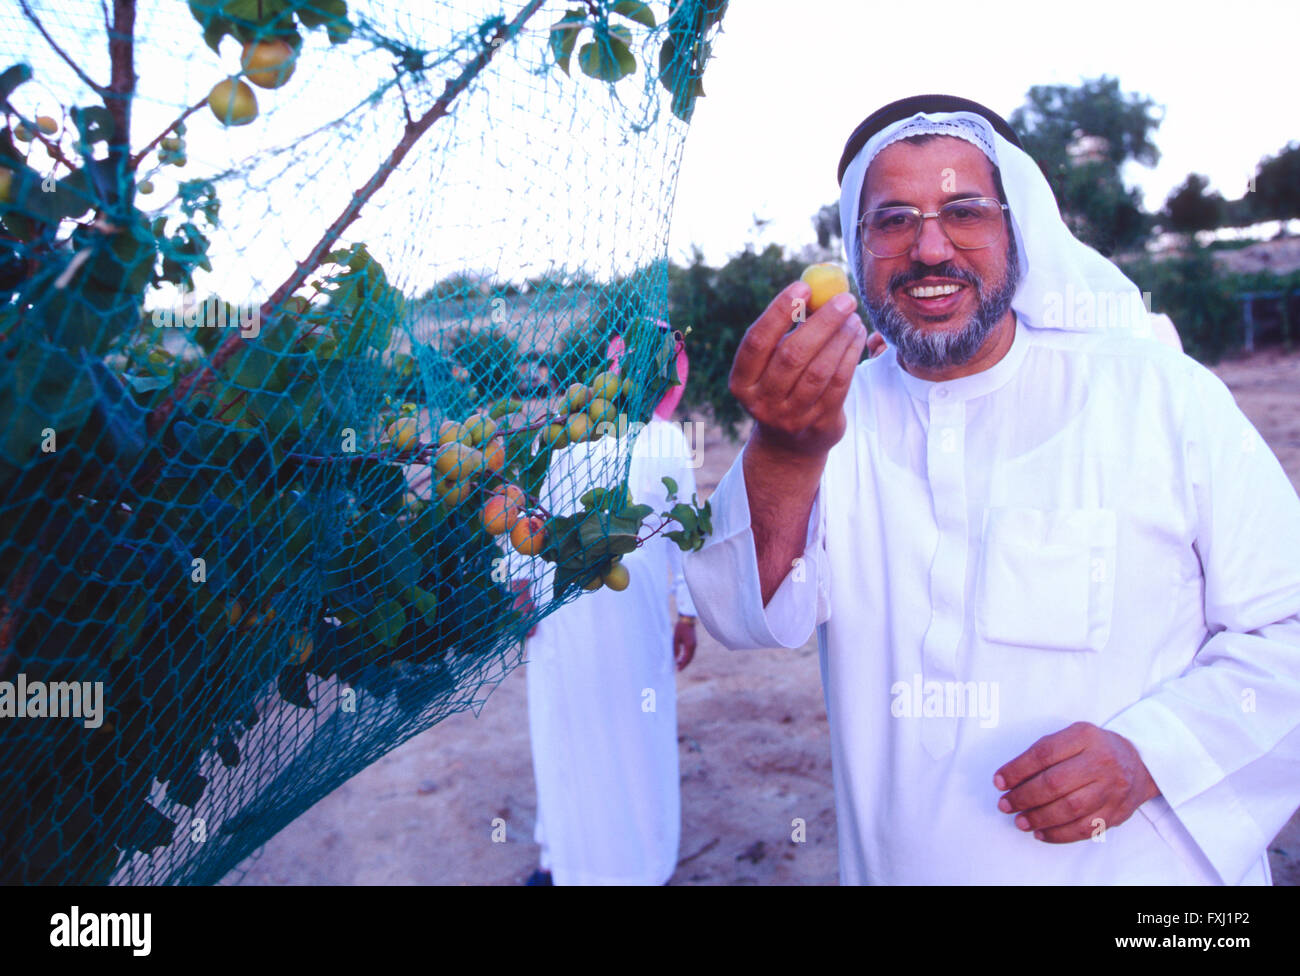 Arabia uomo in abito tradizionale azienda appena raccolto frutti da albero di fattoria Foto Stock